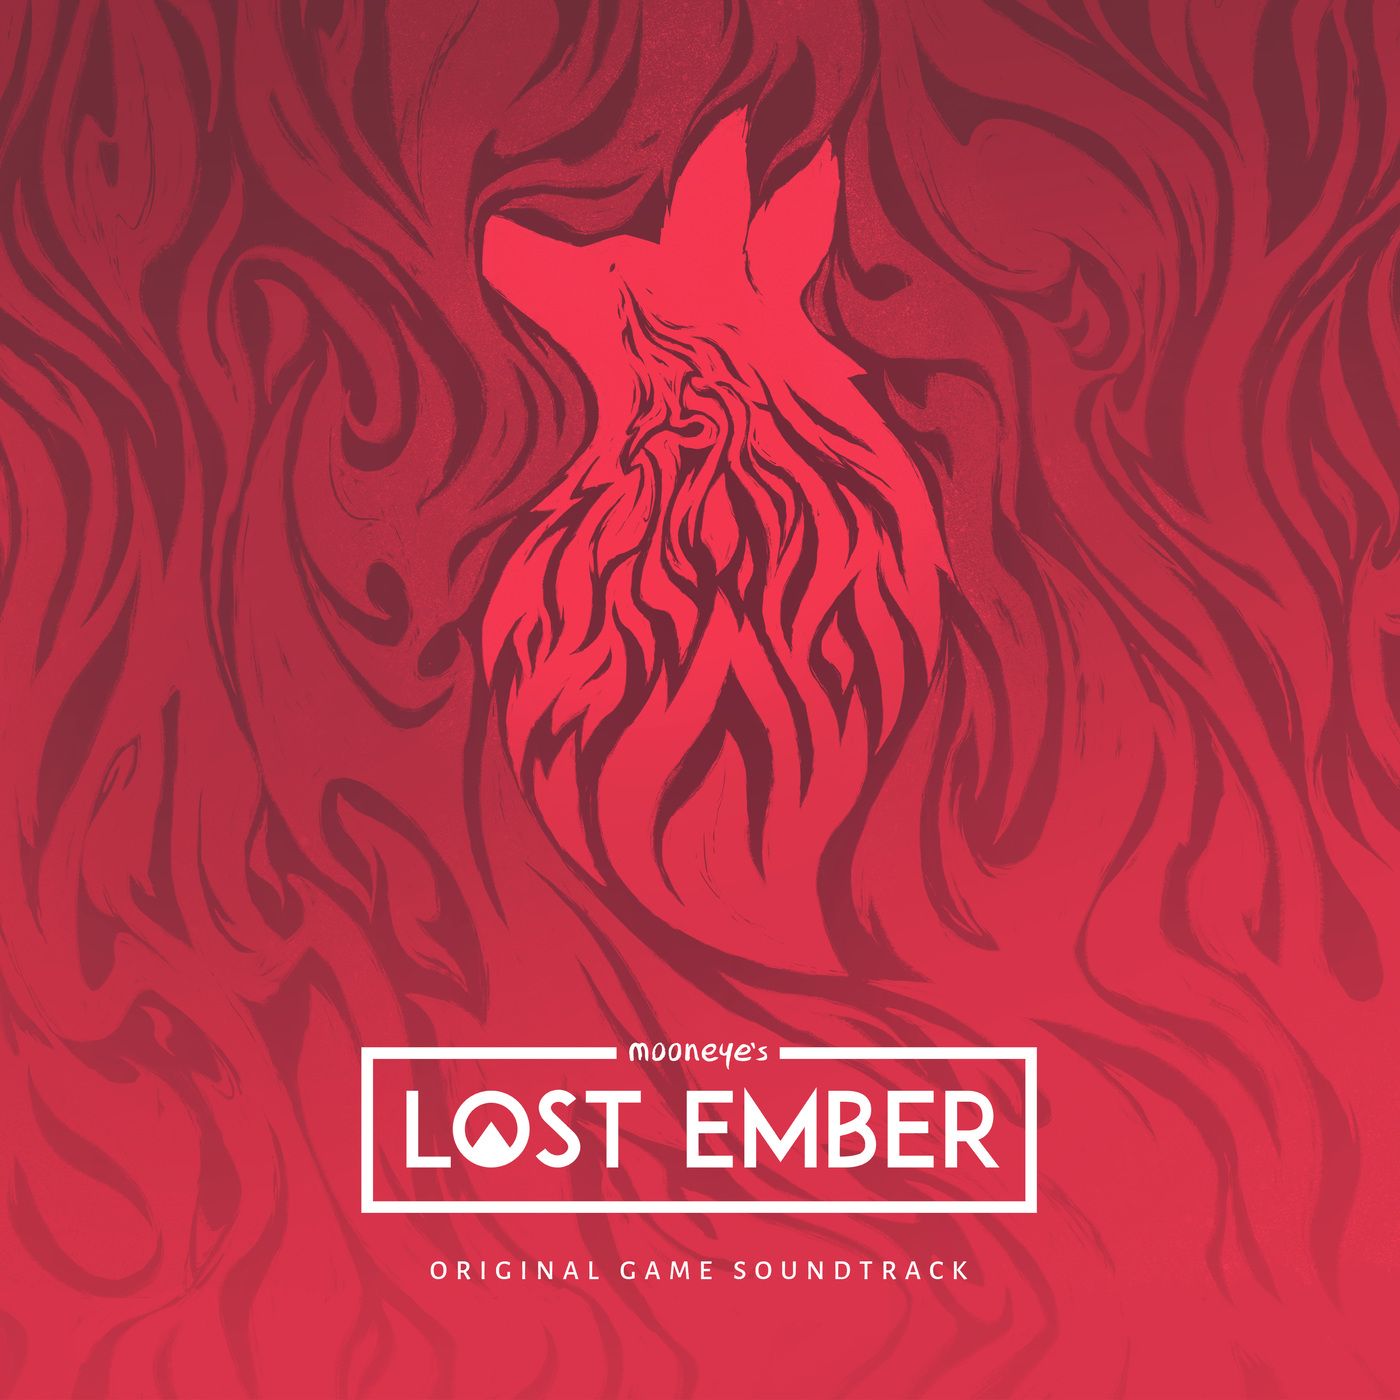 Lost Ember Game Soundtrack MP3 Lost Ember Game Soundtrack Soundtracks for FREE!